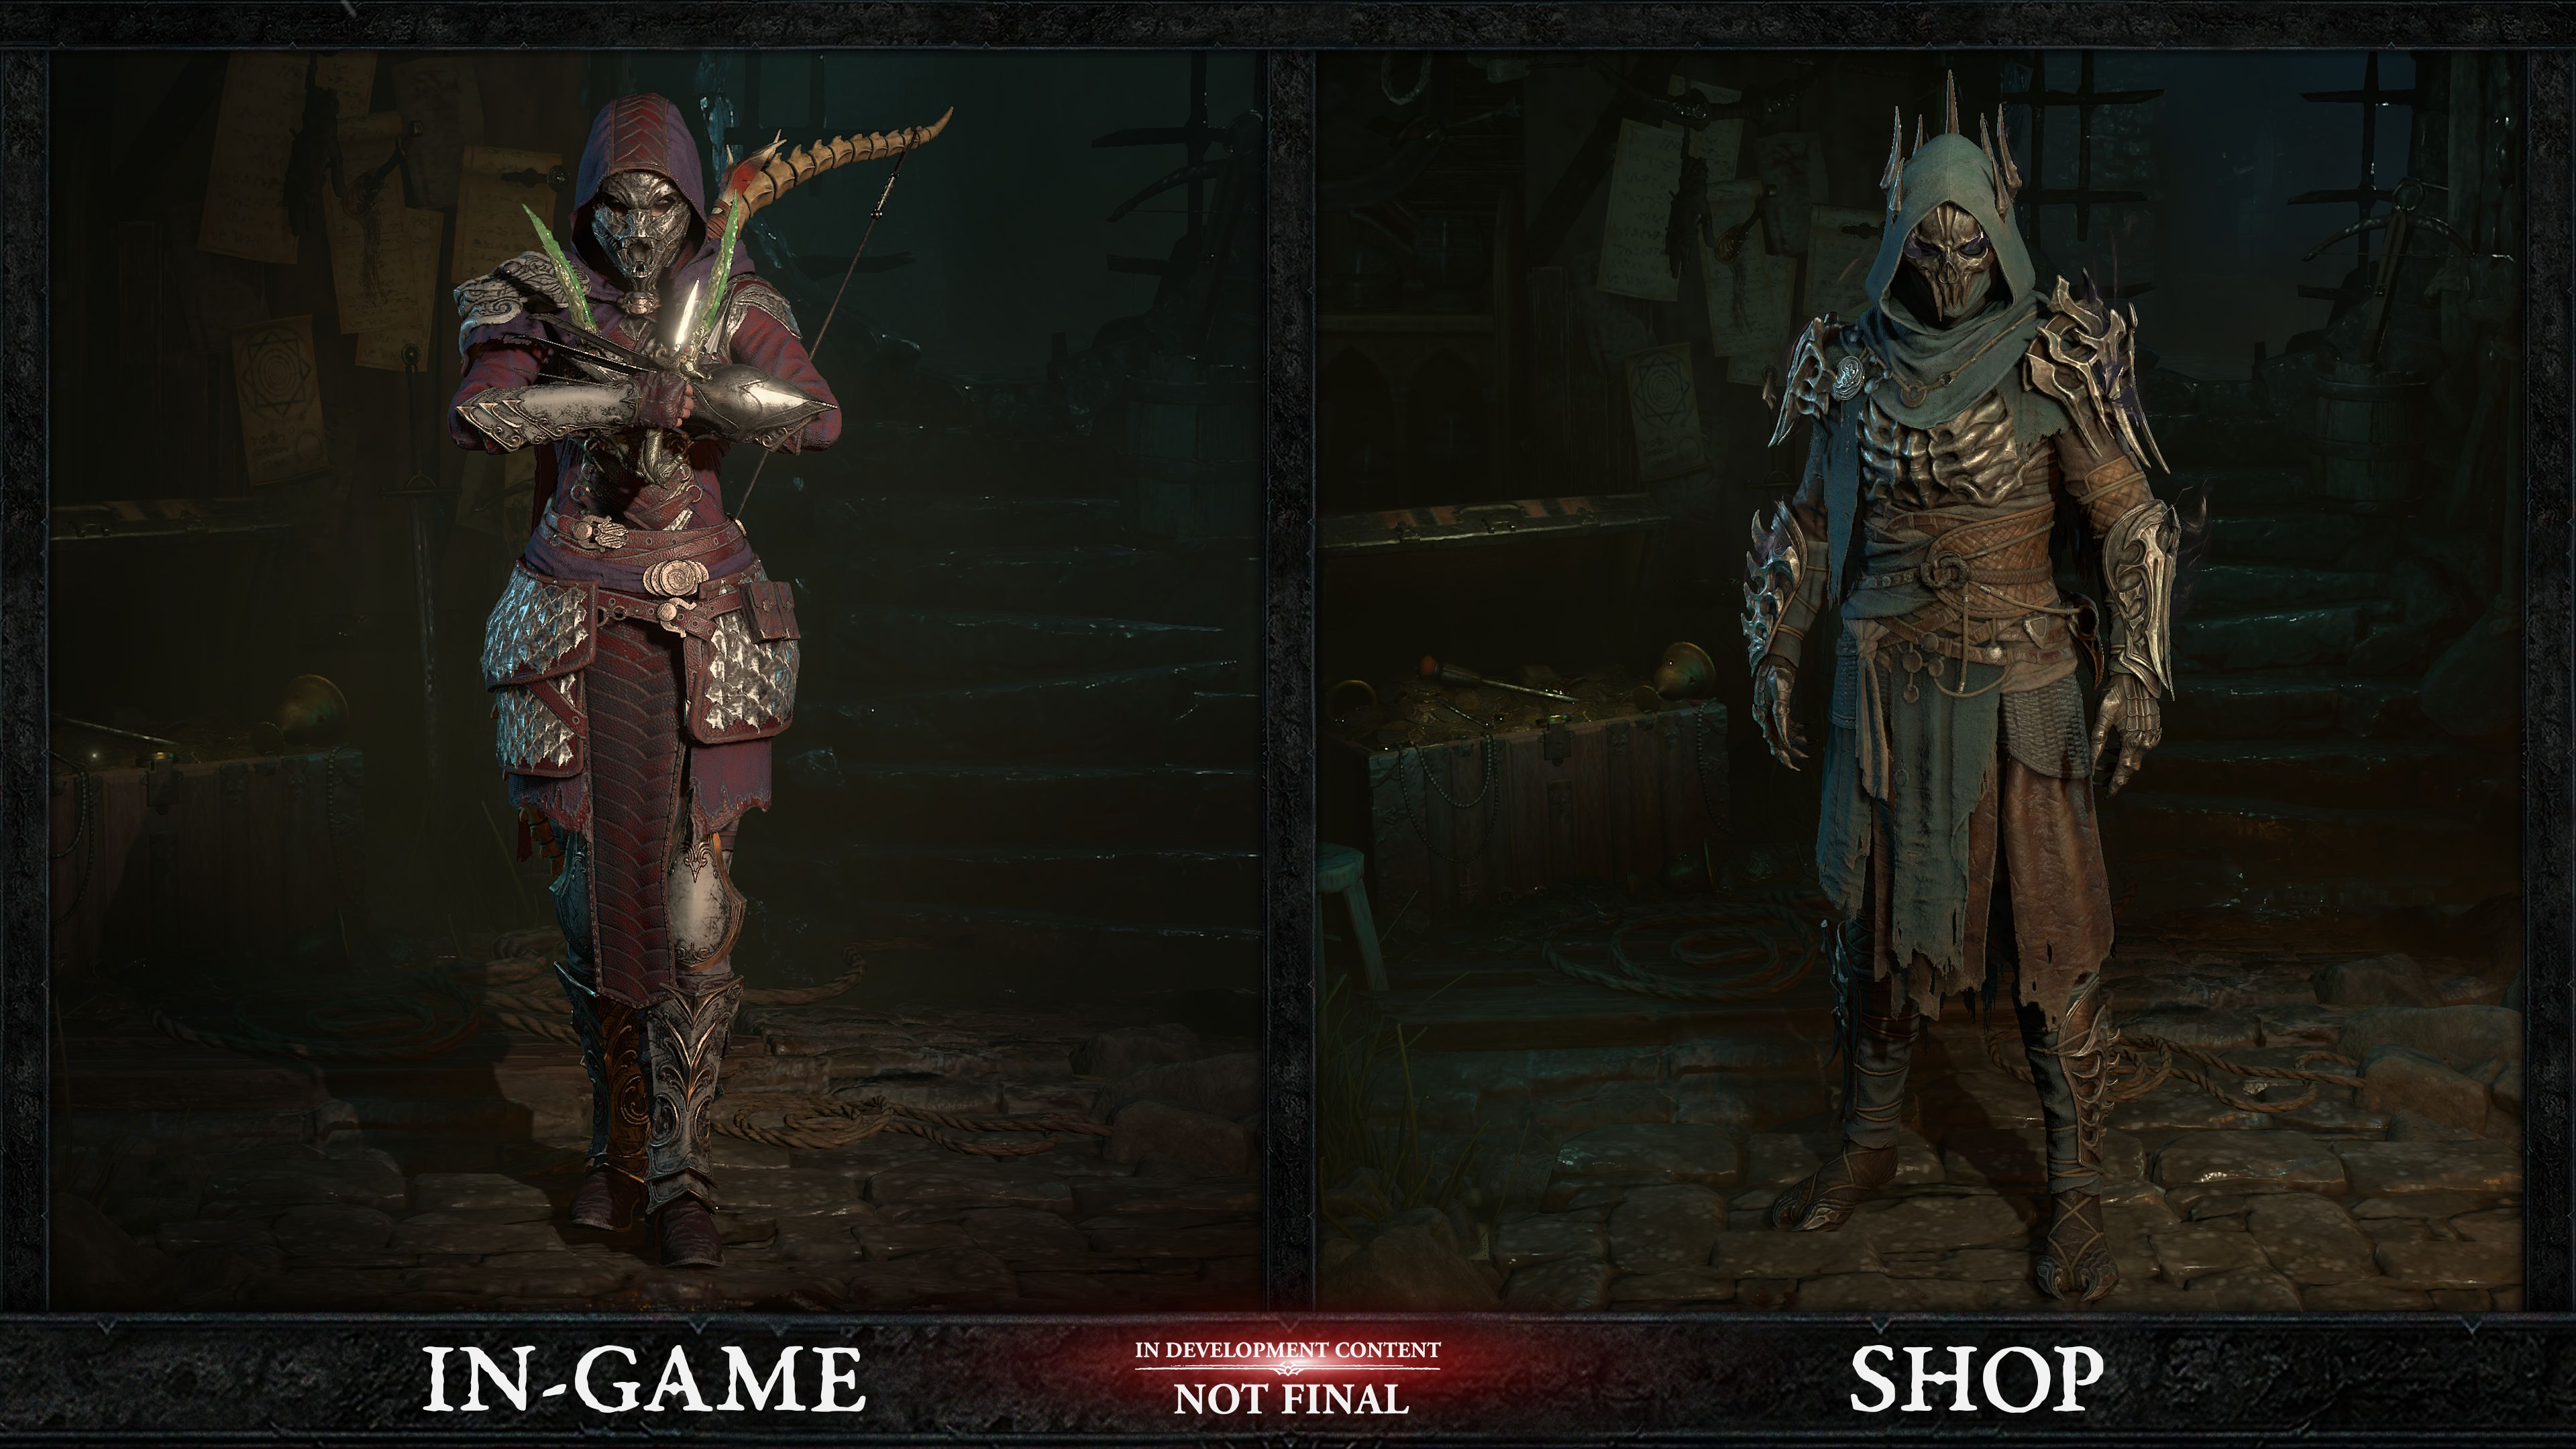 Diablo 4 shop vs game comparison image